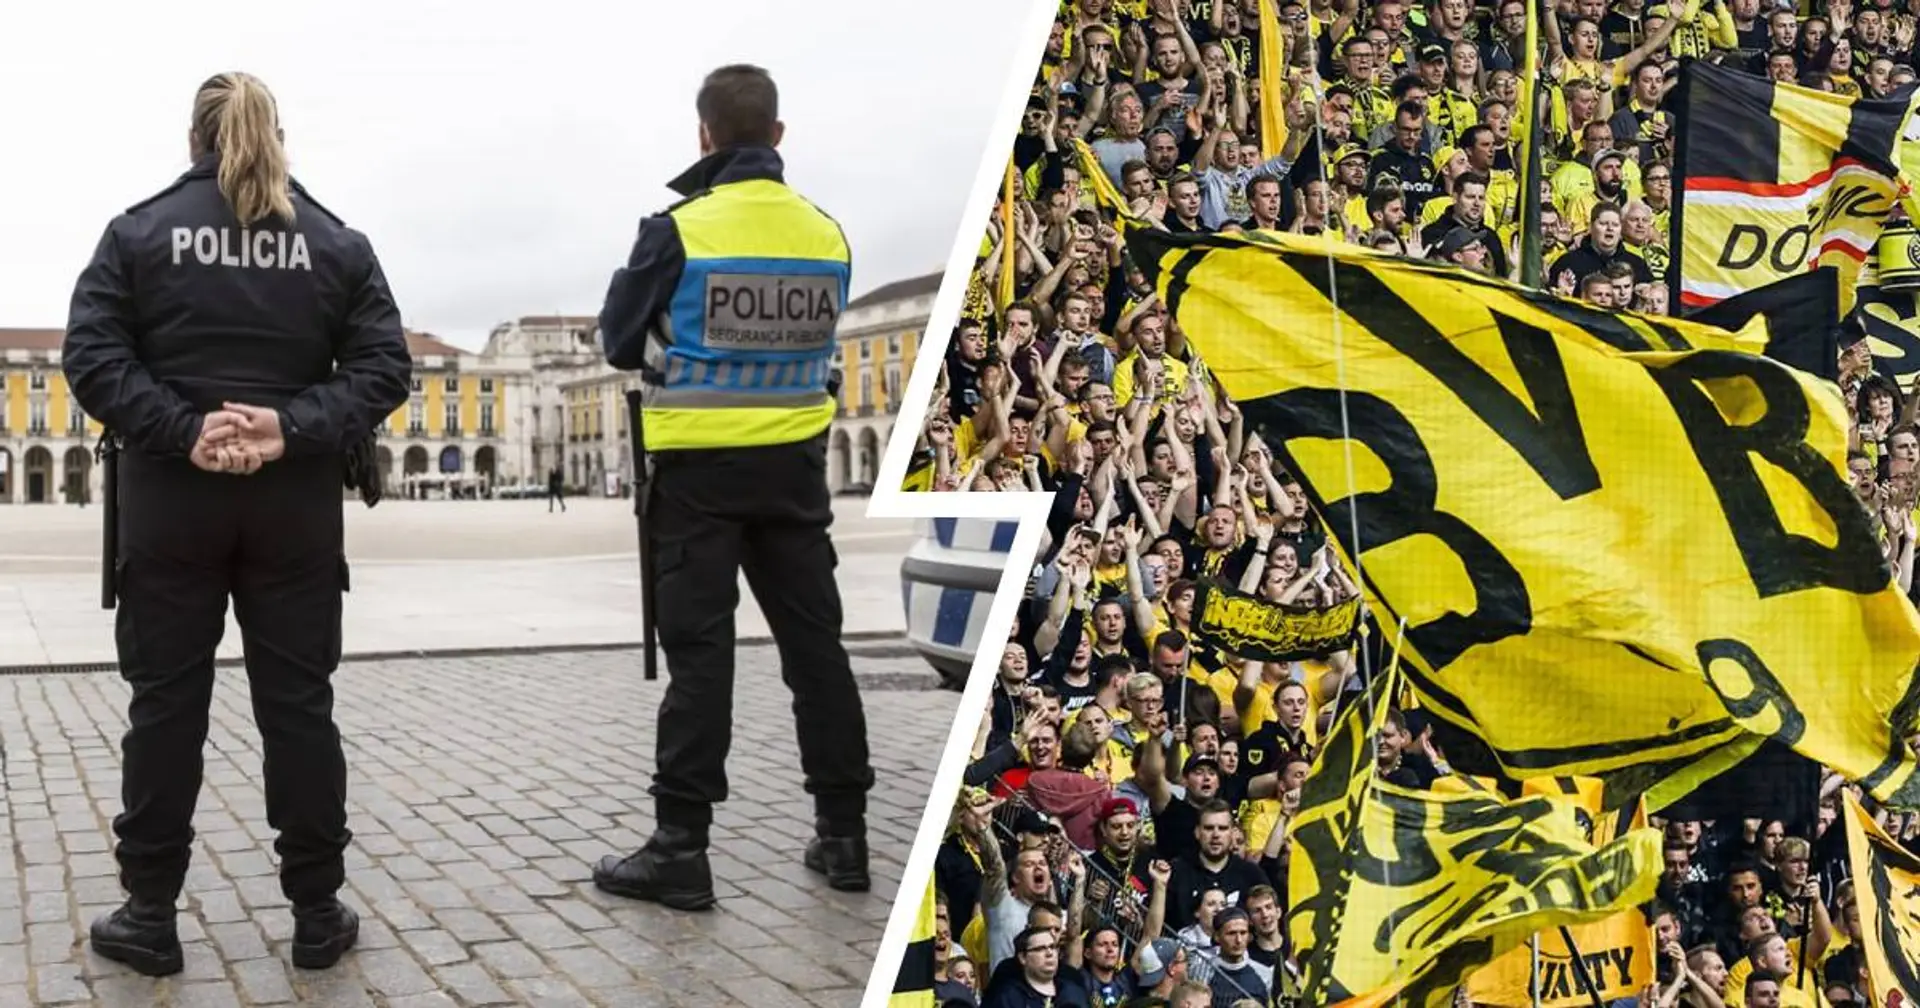 Unruhe in Lissabon: Es kam zur Schlägerei zwischen BVB-Fans und der Polizei